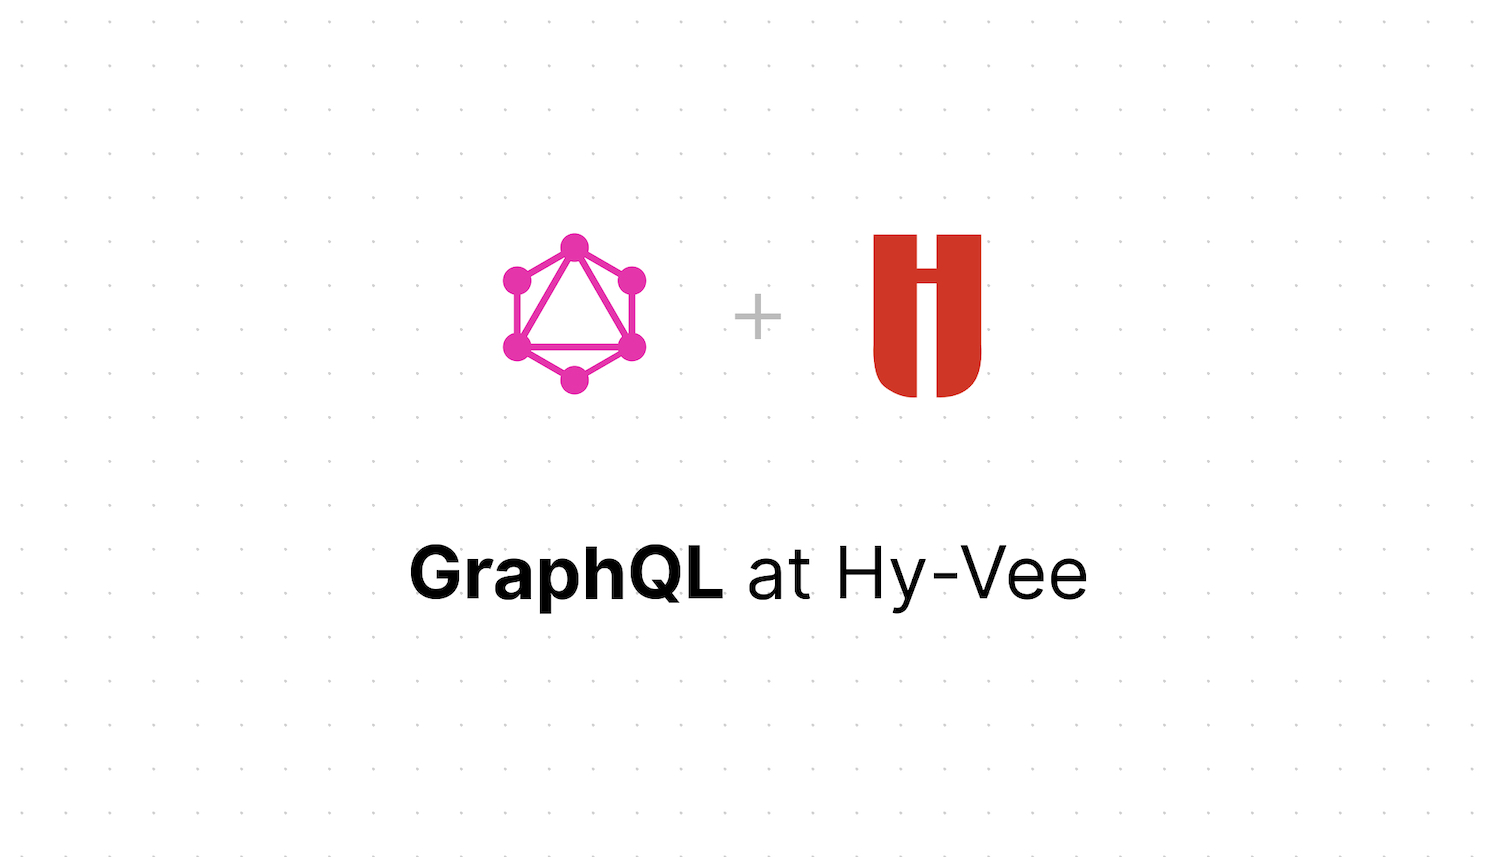 GraphQL at Hy-Vee